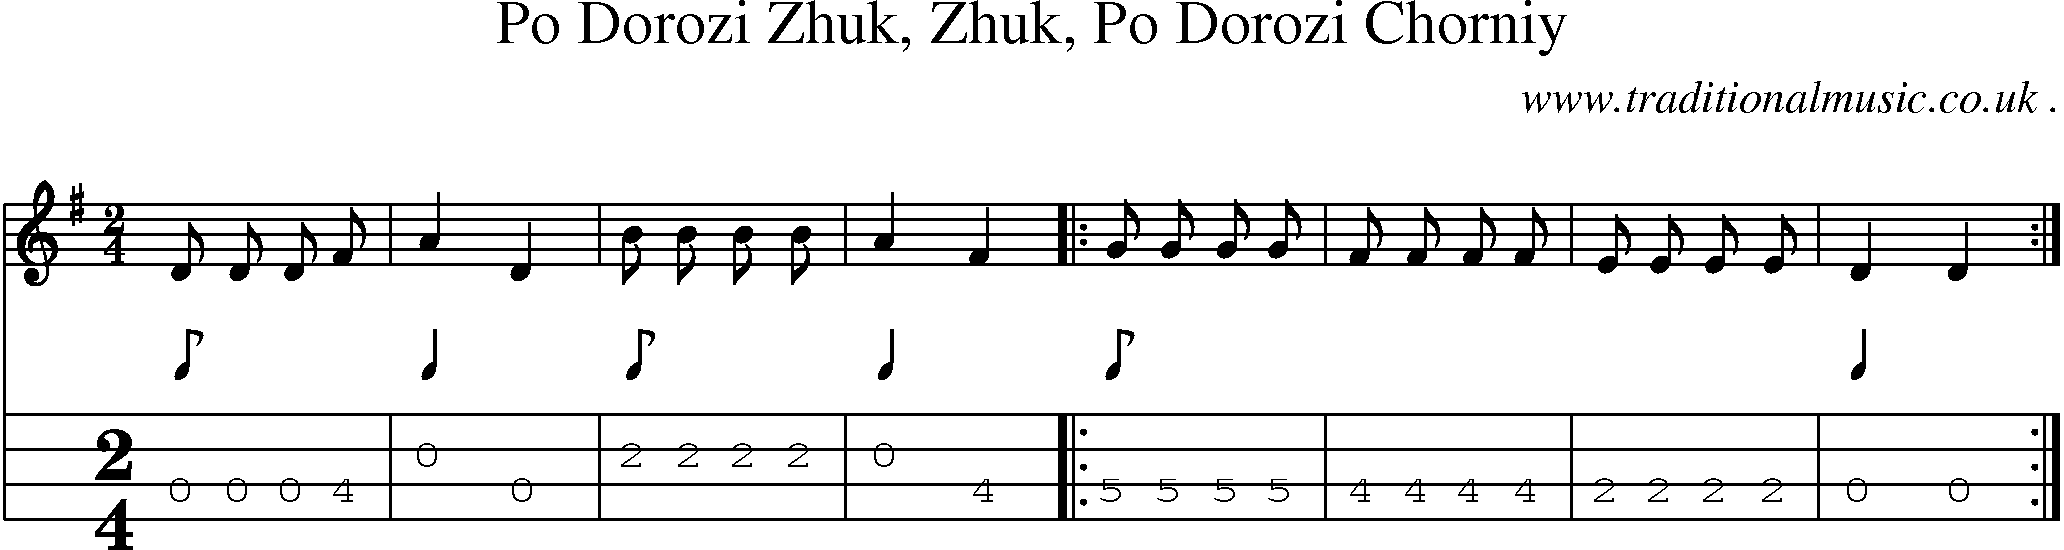 Sheet-Music and Mandolin Tabs for Po Dorozi Zhuk Zhuk Po Dorozi Chorniy